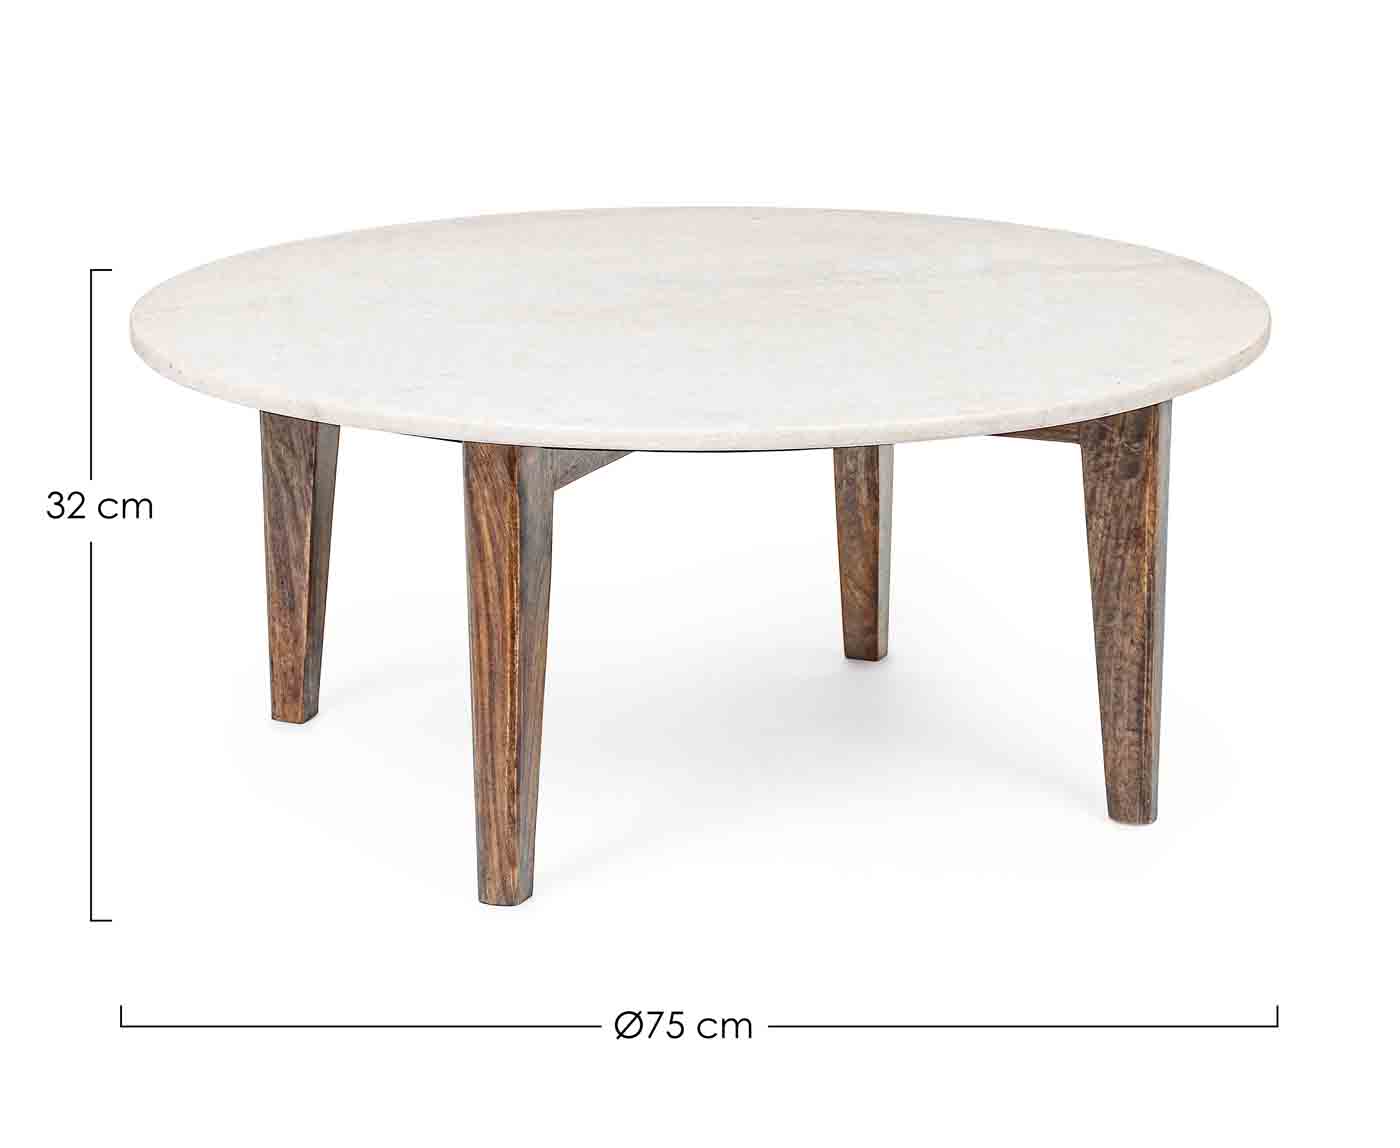 Tischplatte des Beistelltisches Sylvester ist aus Marmor. Das Gestell ist aus Mangoholz, welches lackiert ist.